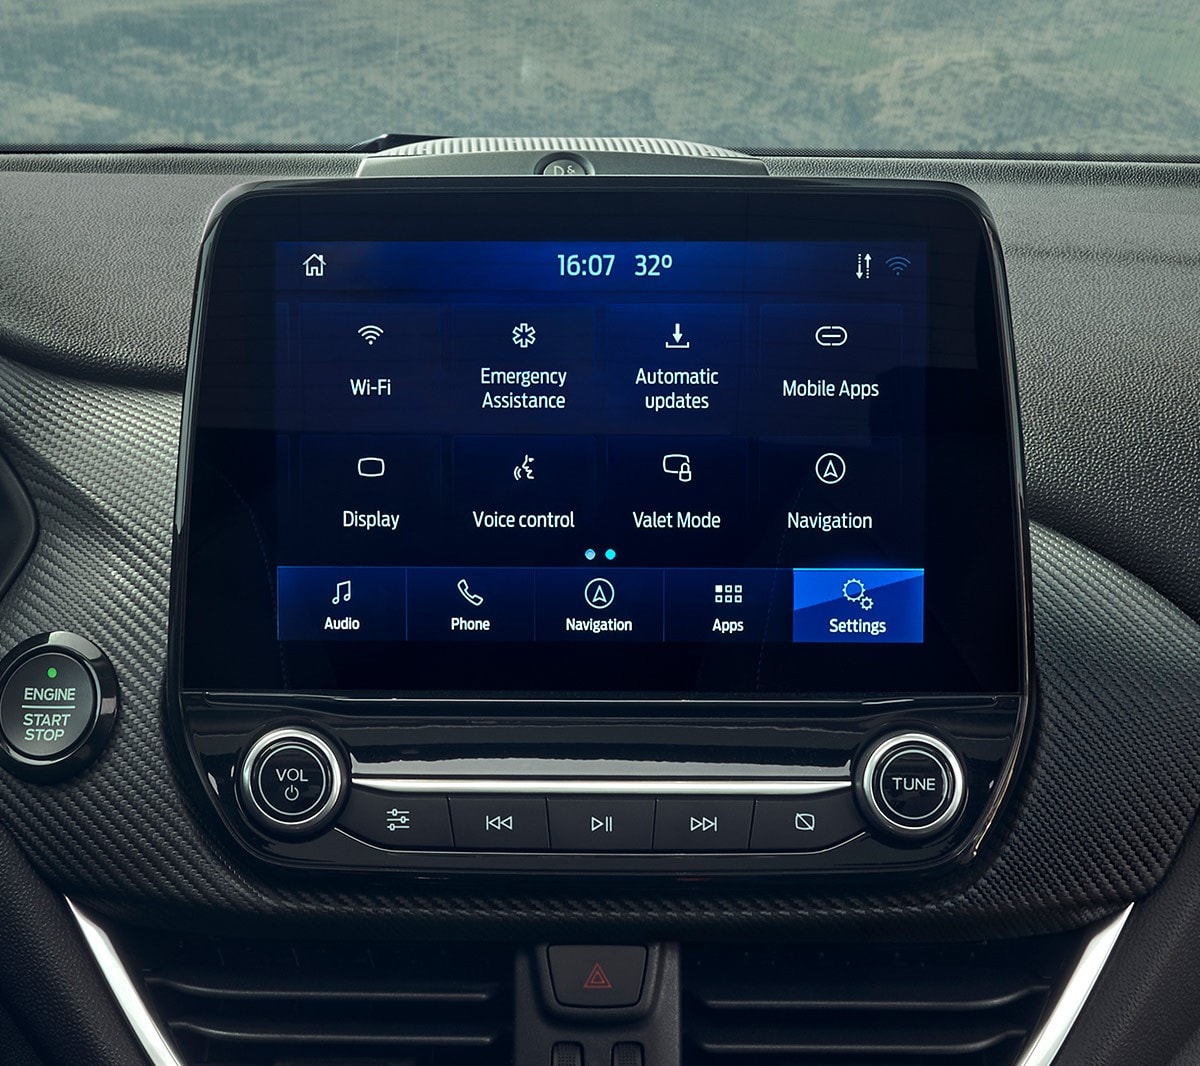 Interiér Fordu Fiesta, dotykový displej SYNC 3.2 zblízka